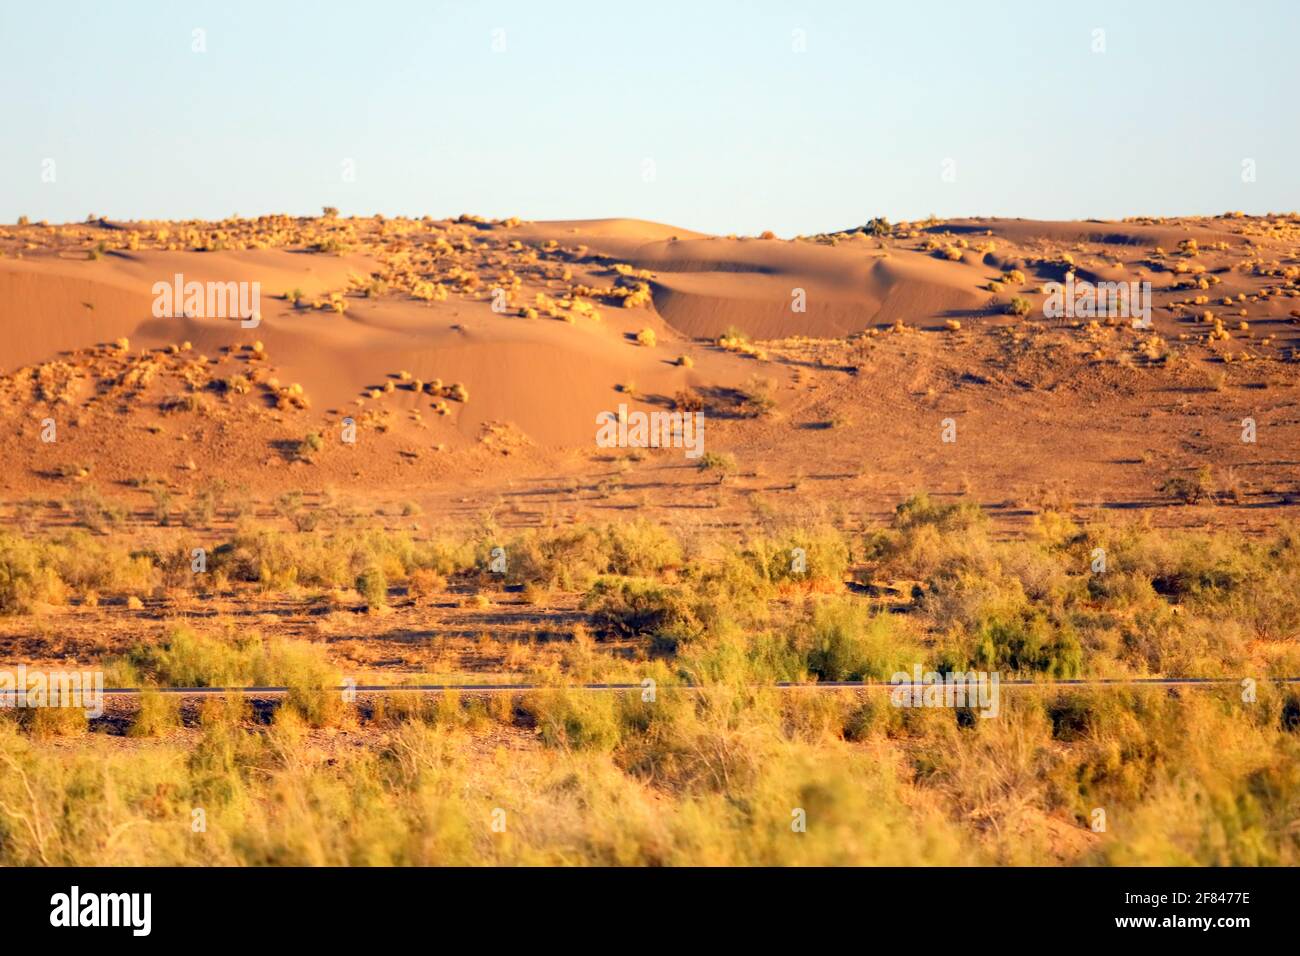 Iran - Diese Wüste ist nicht auf dem Mars, sondern in Iran. Stock Photo